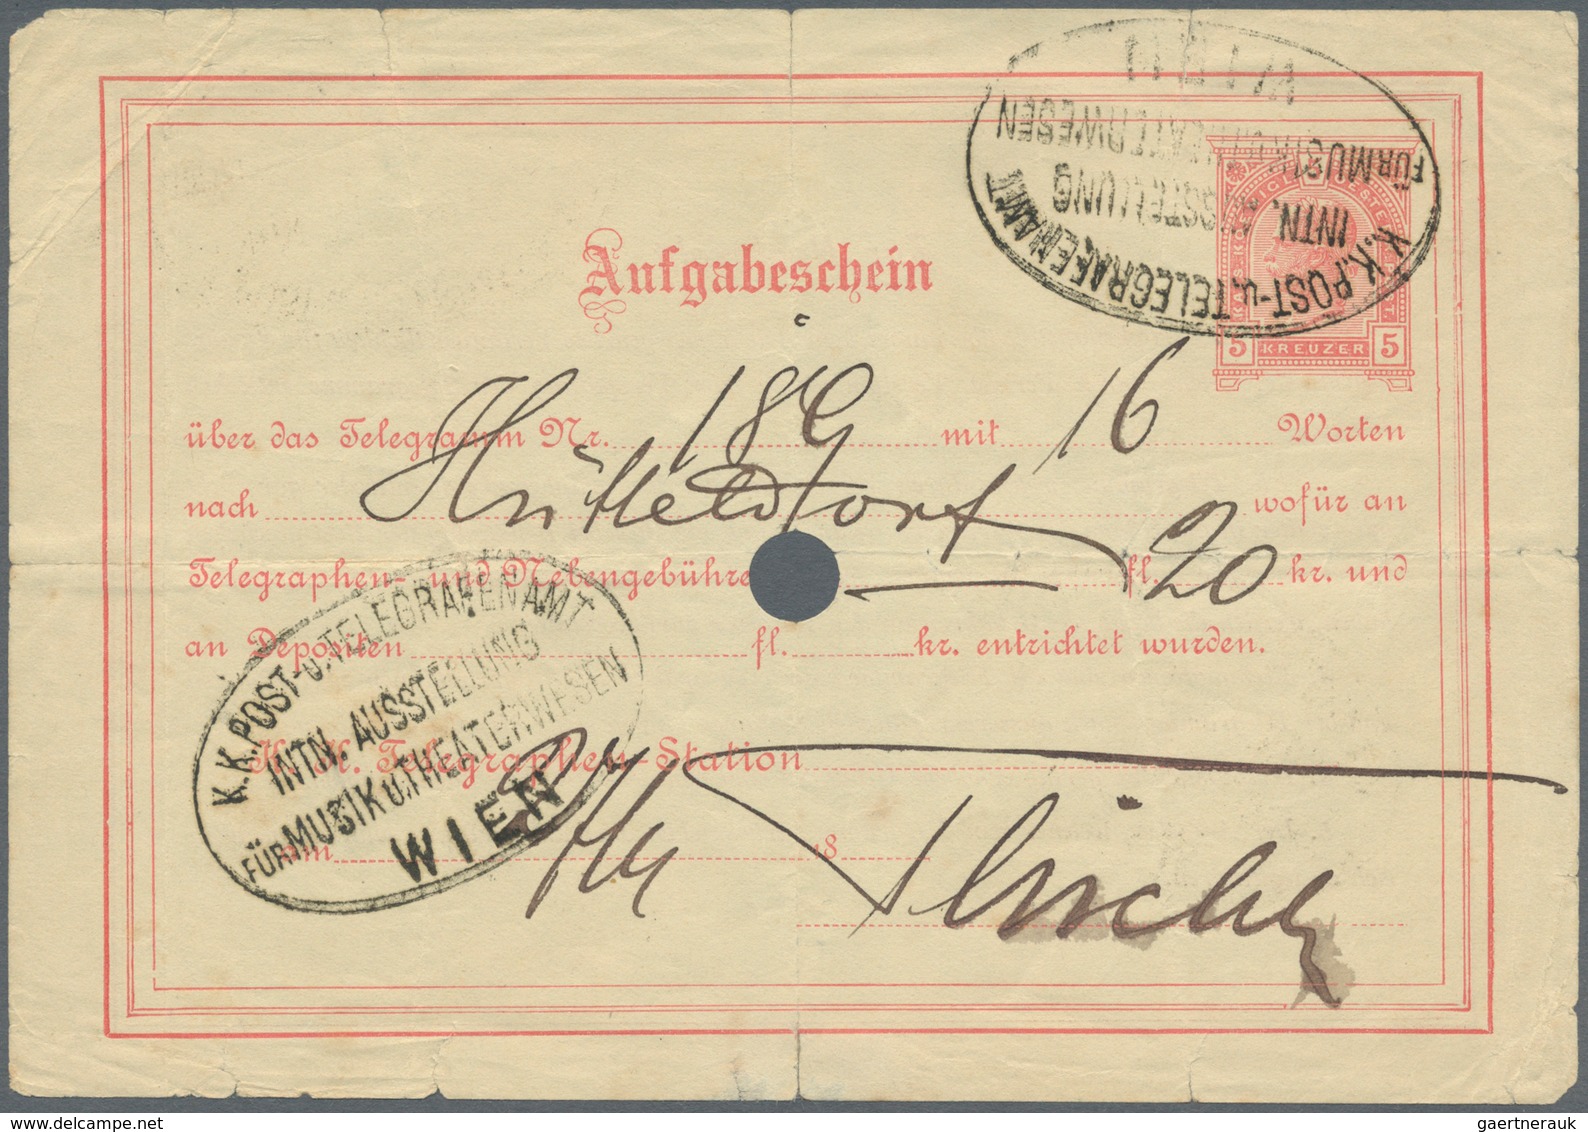 Thematik: Musik / Music: 1892, Telegrammaufgabeschein 5 Heller Mit Sehr Seltenem Sonderstempel "K.K. - Music